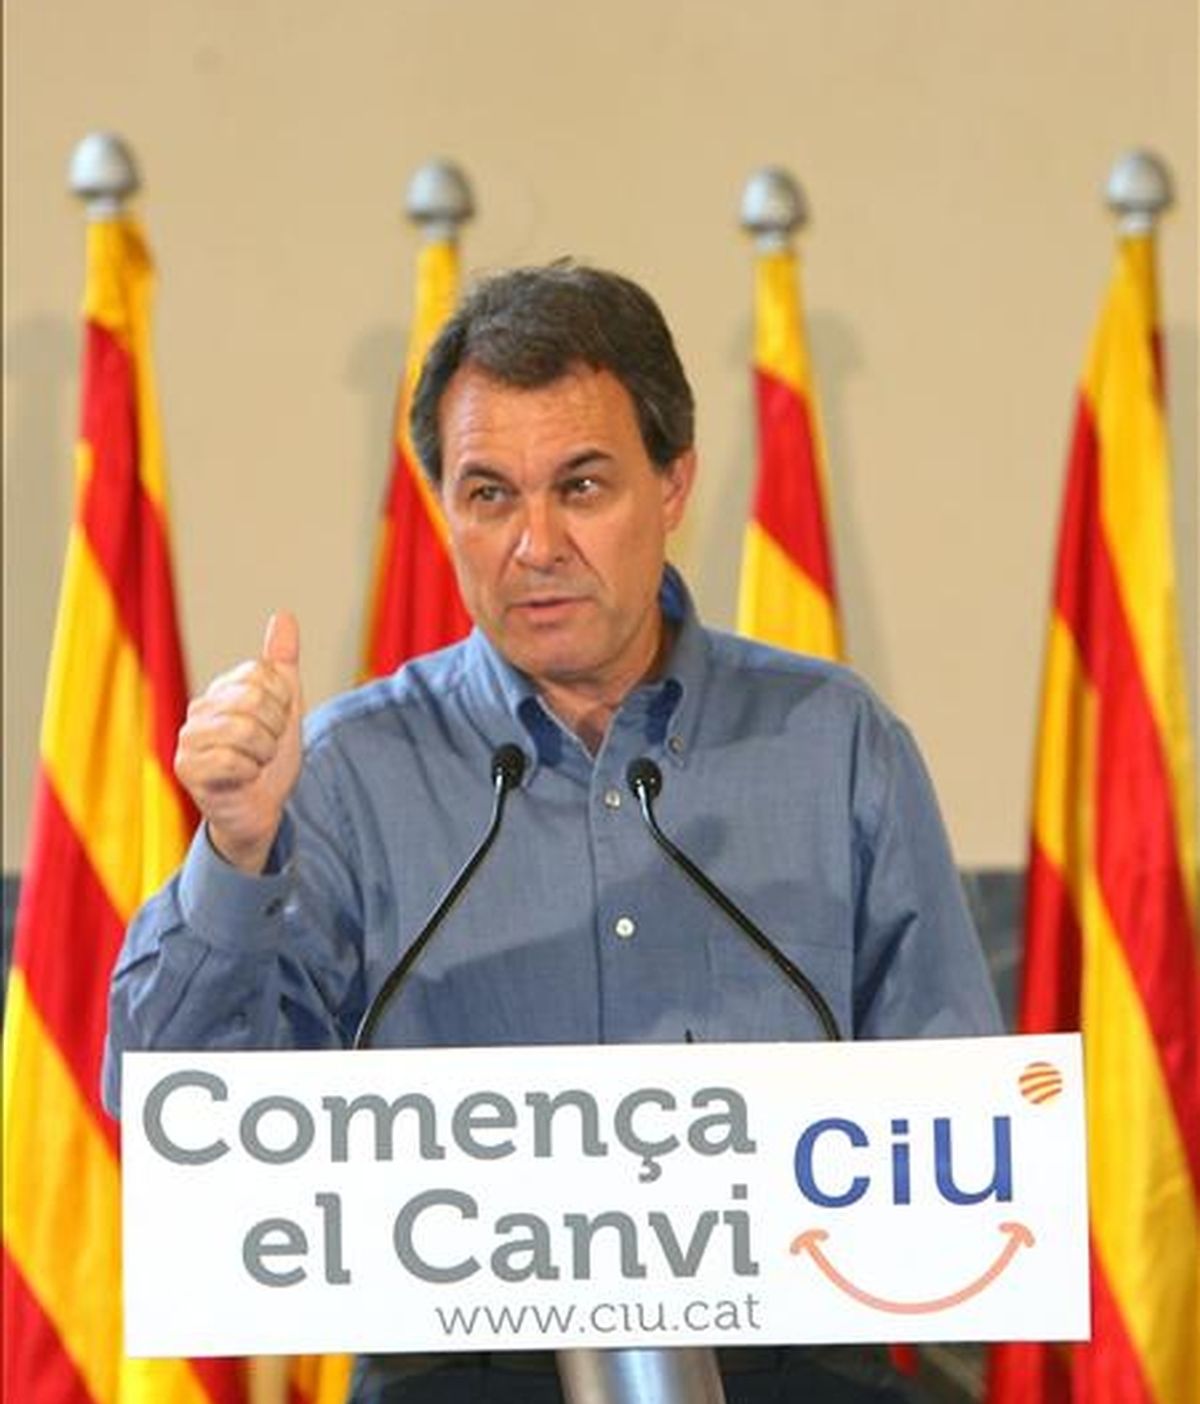 El presidente de Convergencia i Unió ( CiU ), Artur Mas. EFE/Archivo